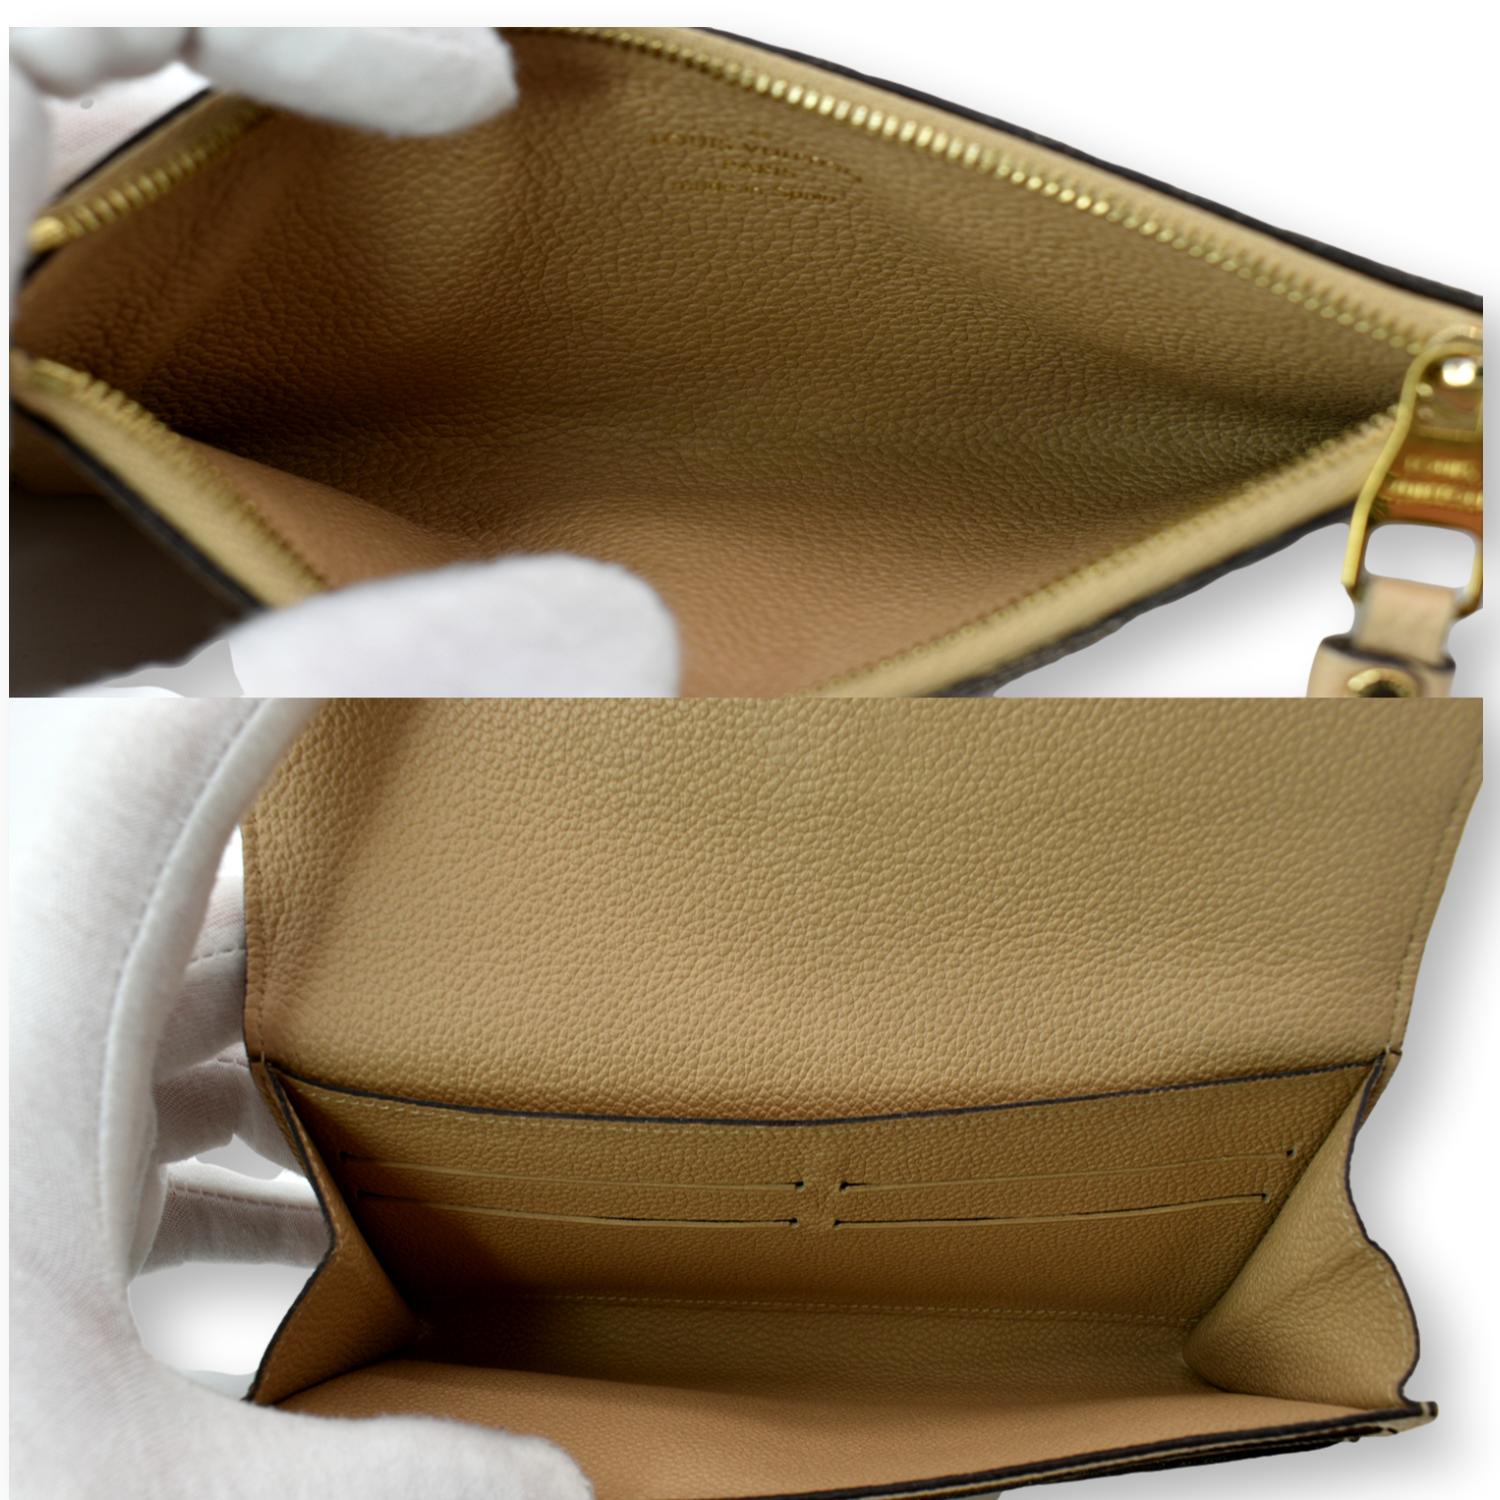 Louis Vuitton Ivory Monogram Empreinte Leather Compact Curieuse 3lva73  Wallet, Louis Vuitton